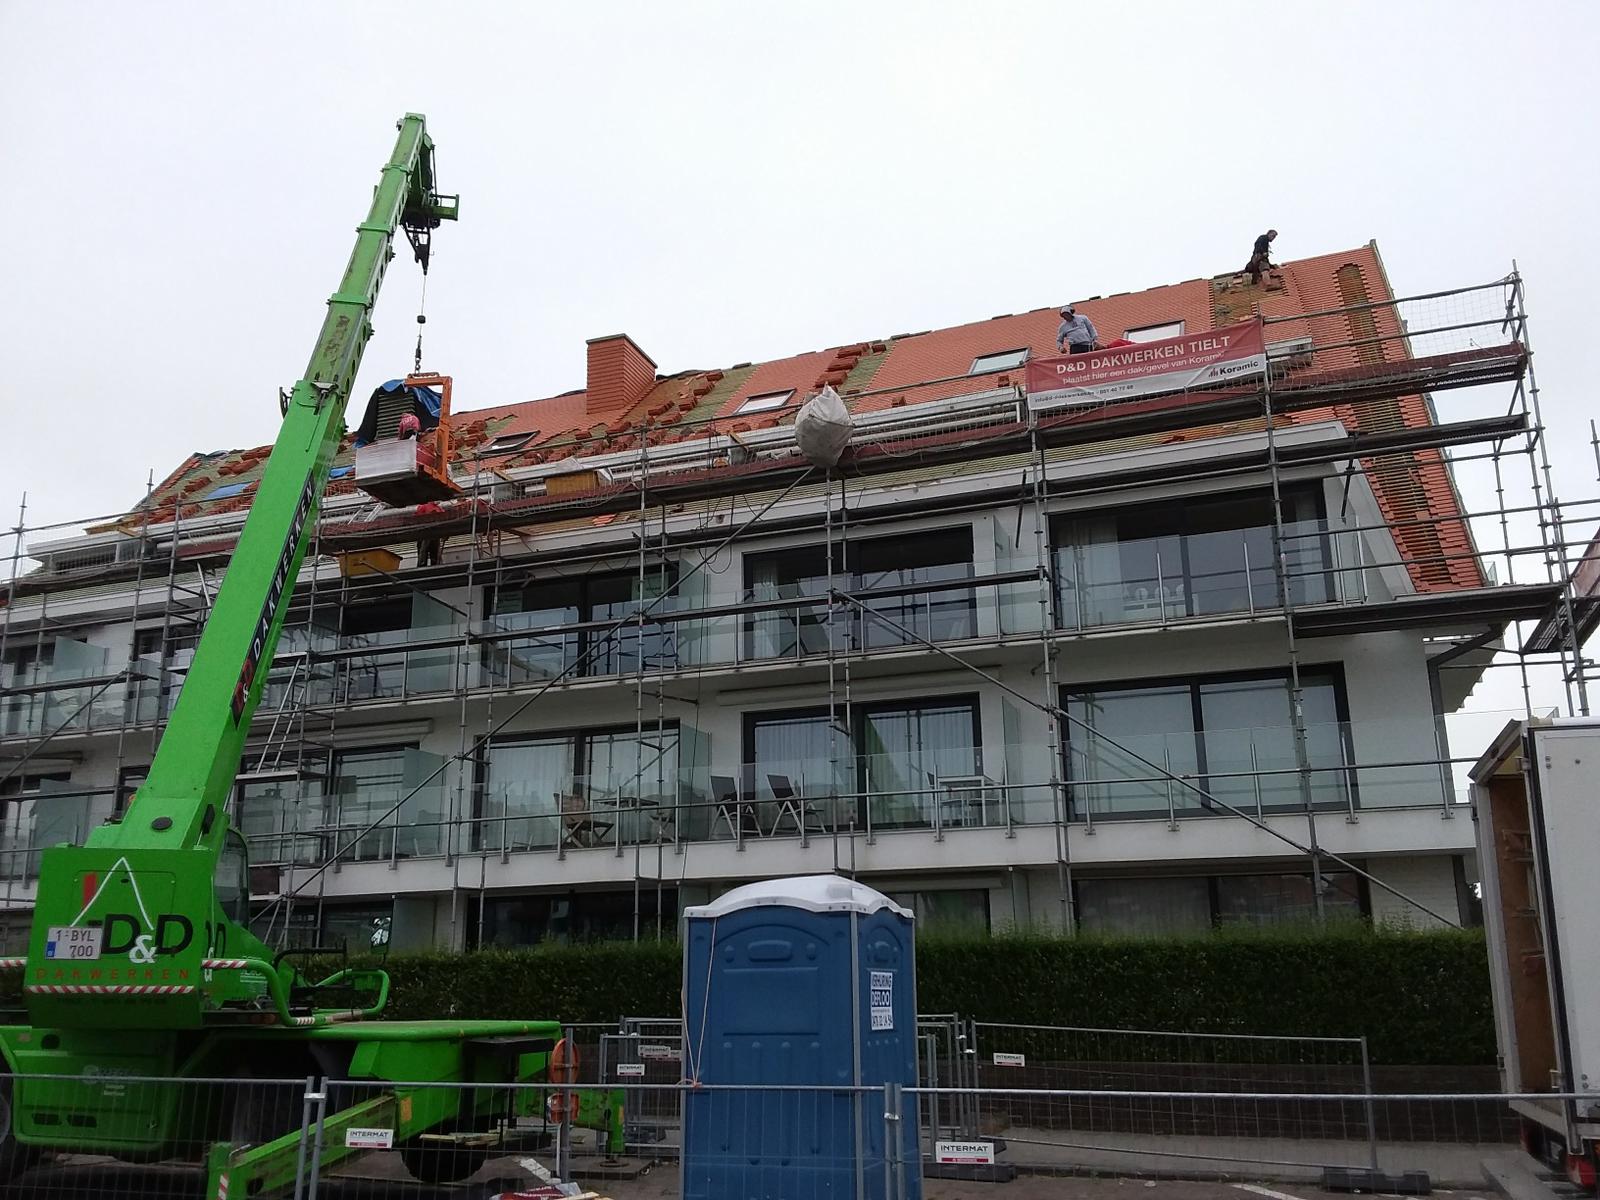 dddakwerken - renovatie - koramic 301 natuurrood - Knokke